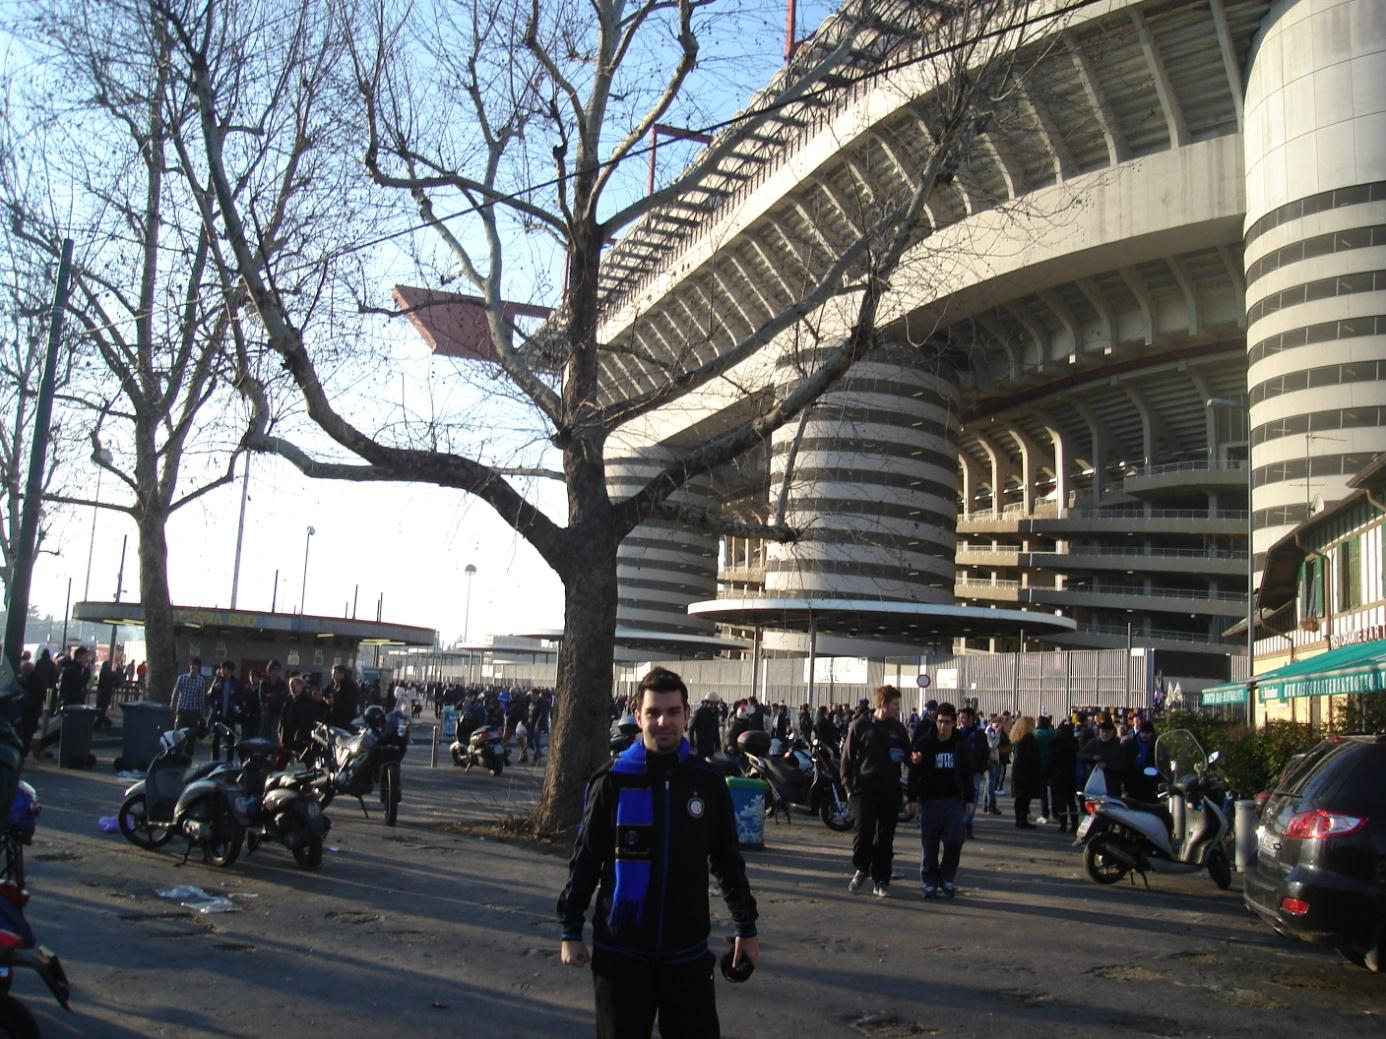 Pe timpul celor patru luni am asistat la numeroase meciuri de fotbal ale echipei locale Internazionale Milano la Stadionul Giuseppe Meazza, San Siro.